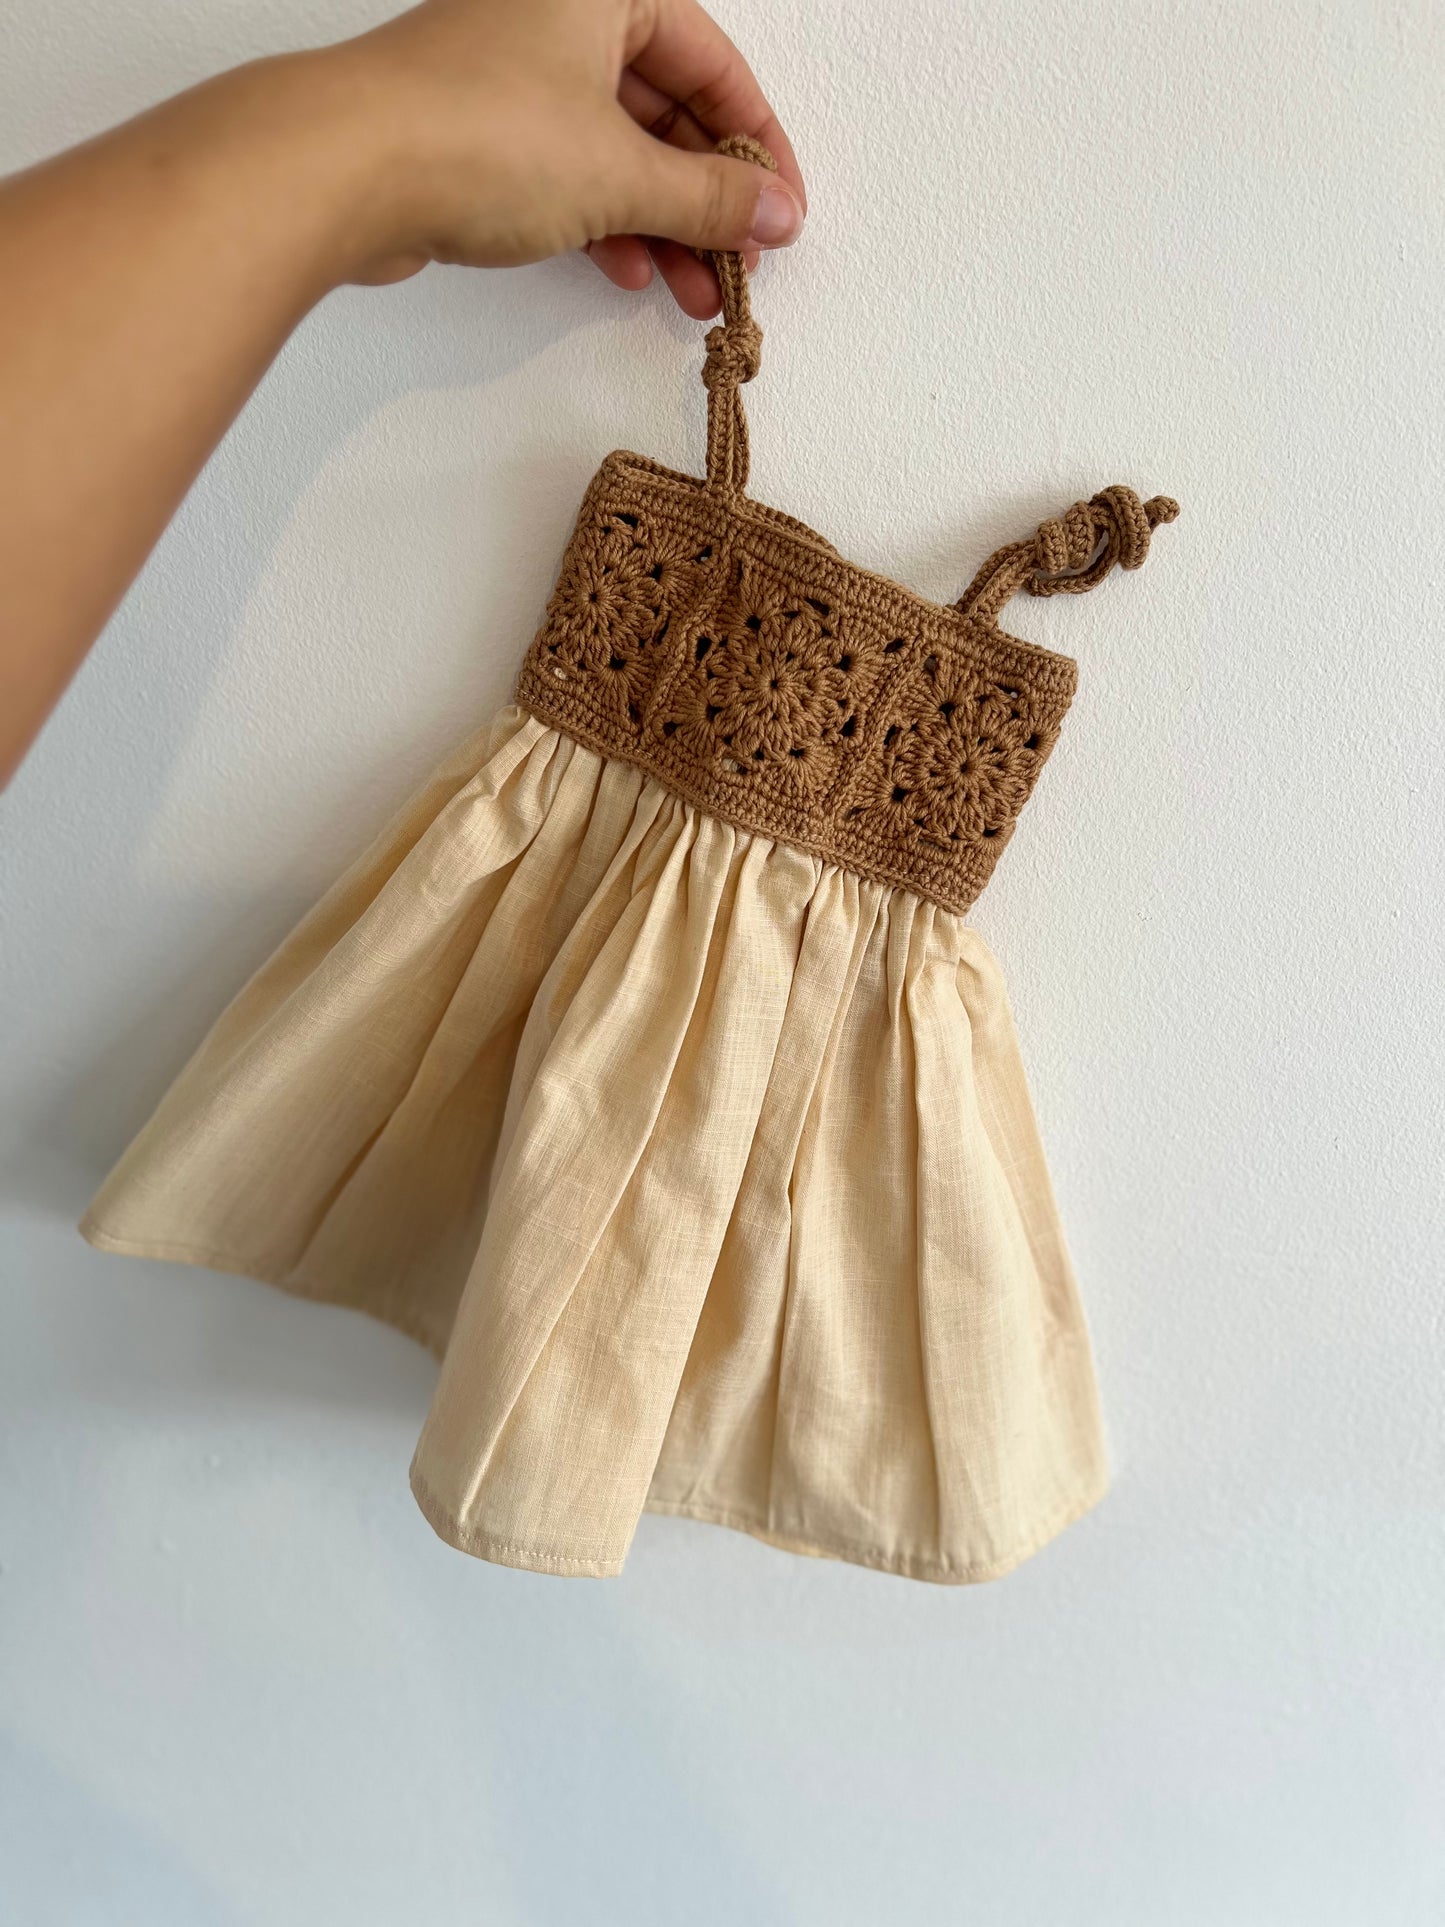 The crochet dress in tan